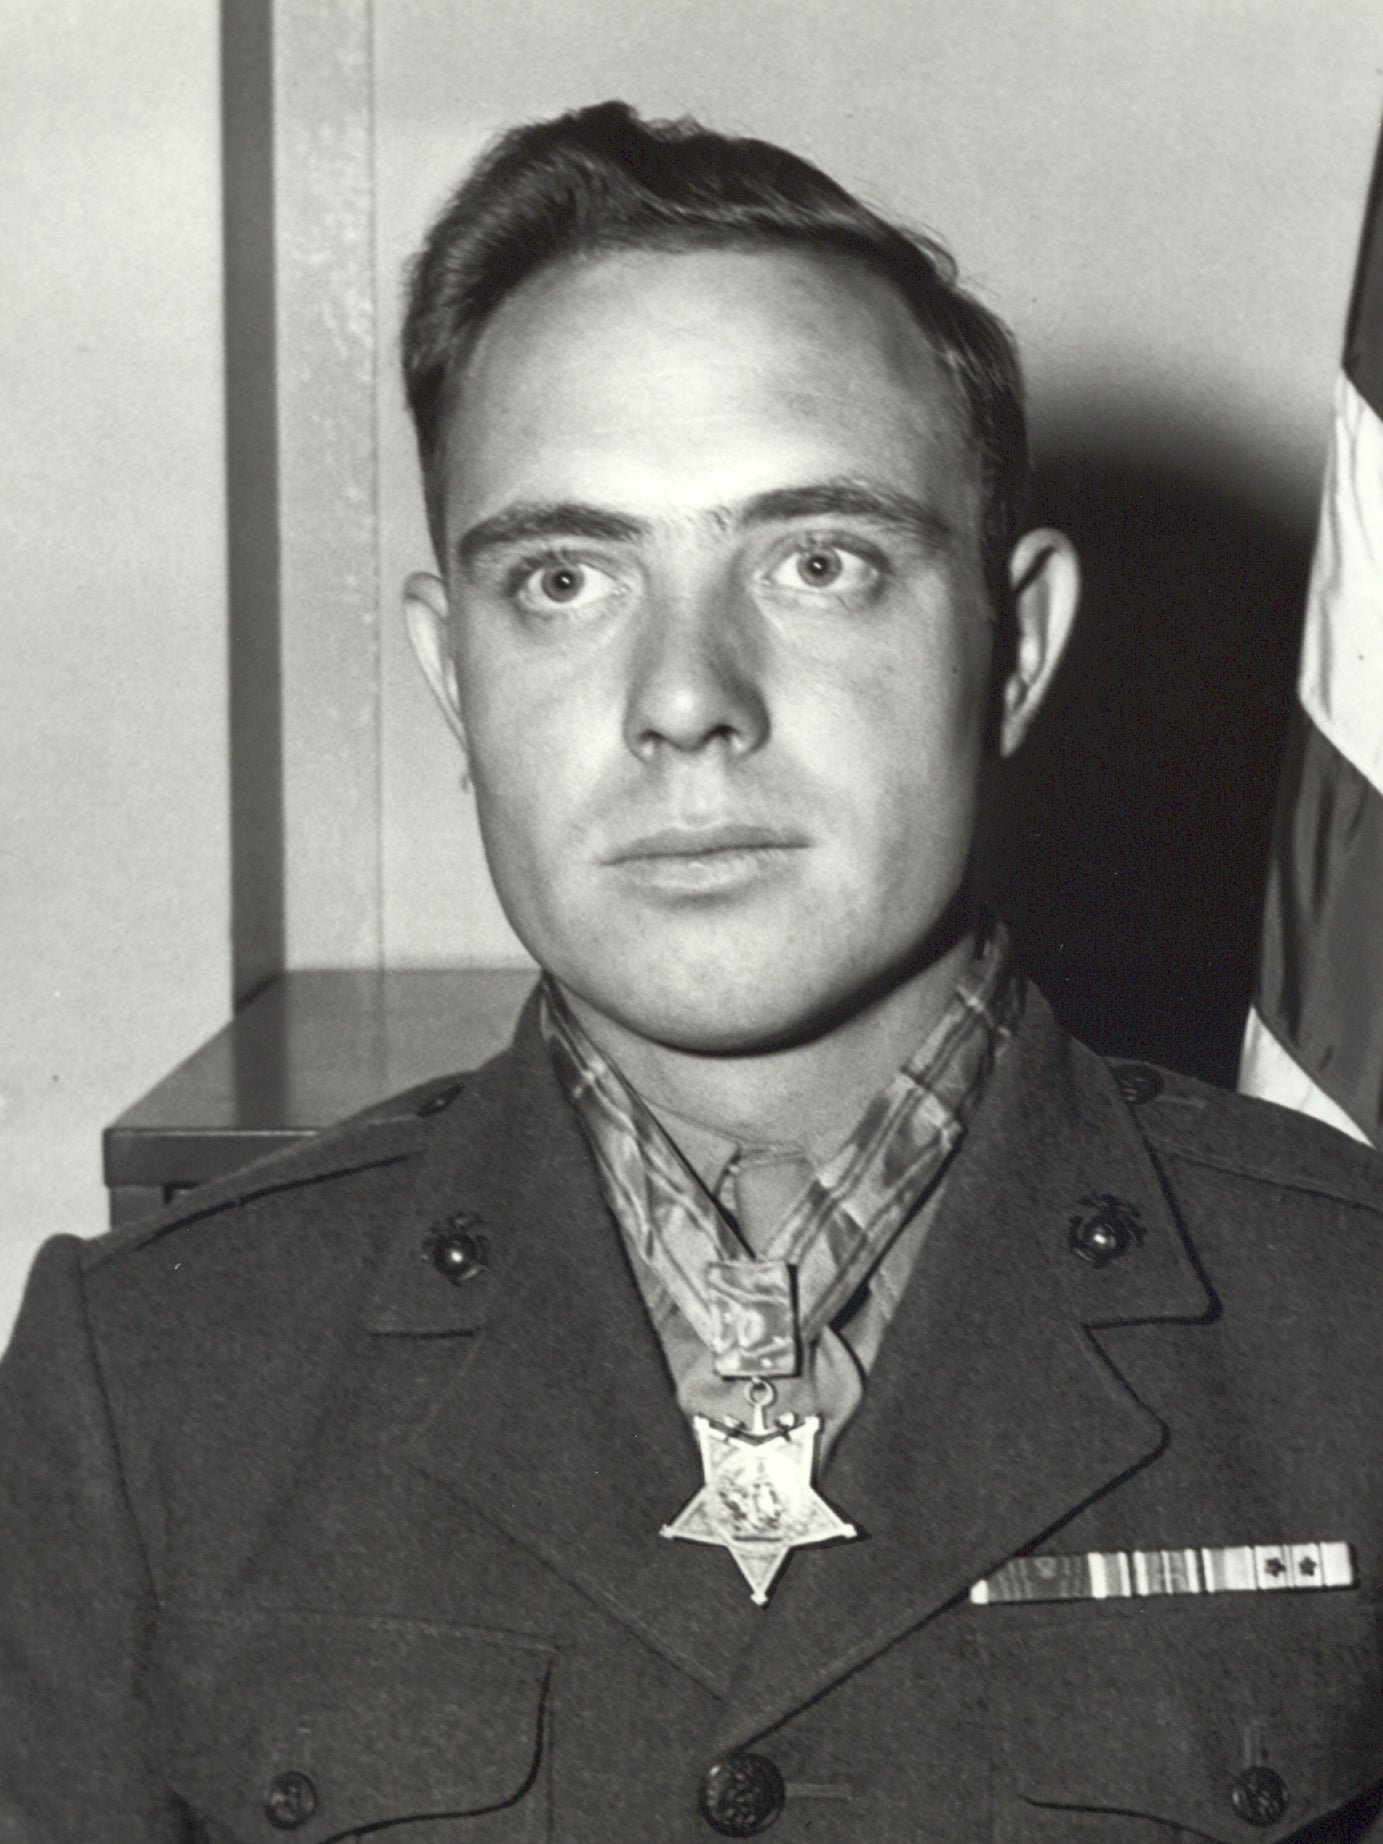 Hershel was ony 21 when he took part in the Iwo Jima landings